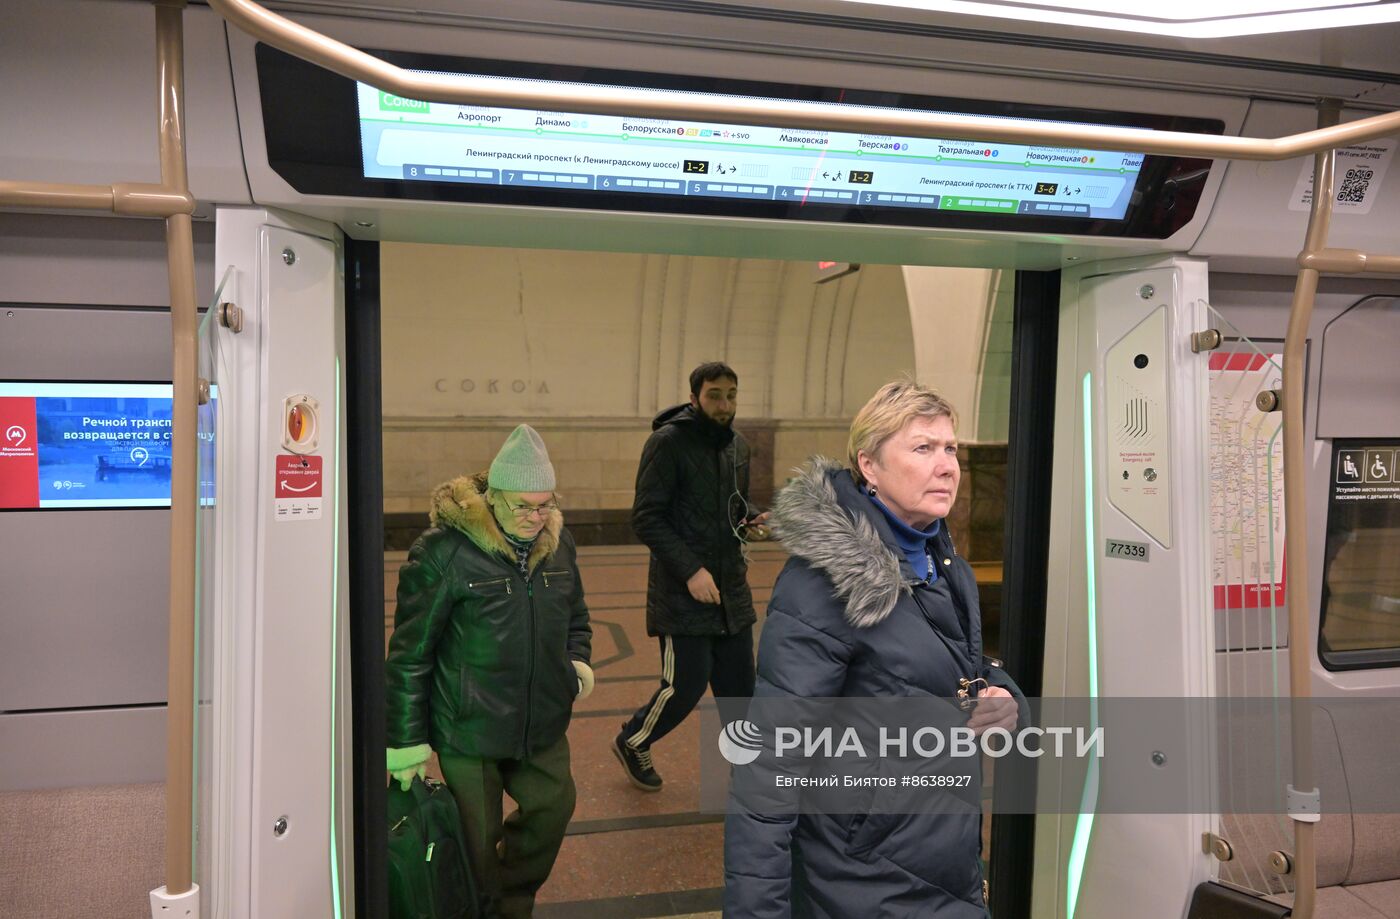 Запуск поезда "Москва-2024" на Замоскворецкой линии метро